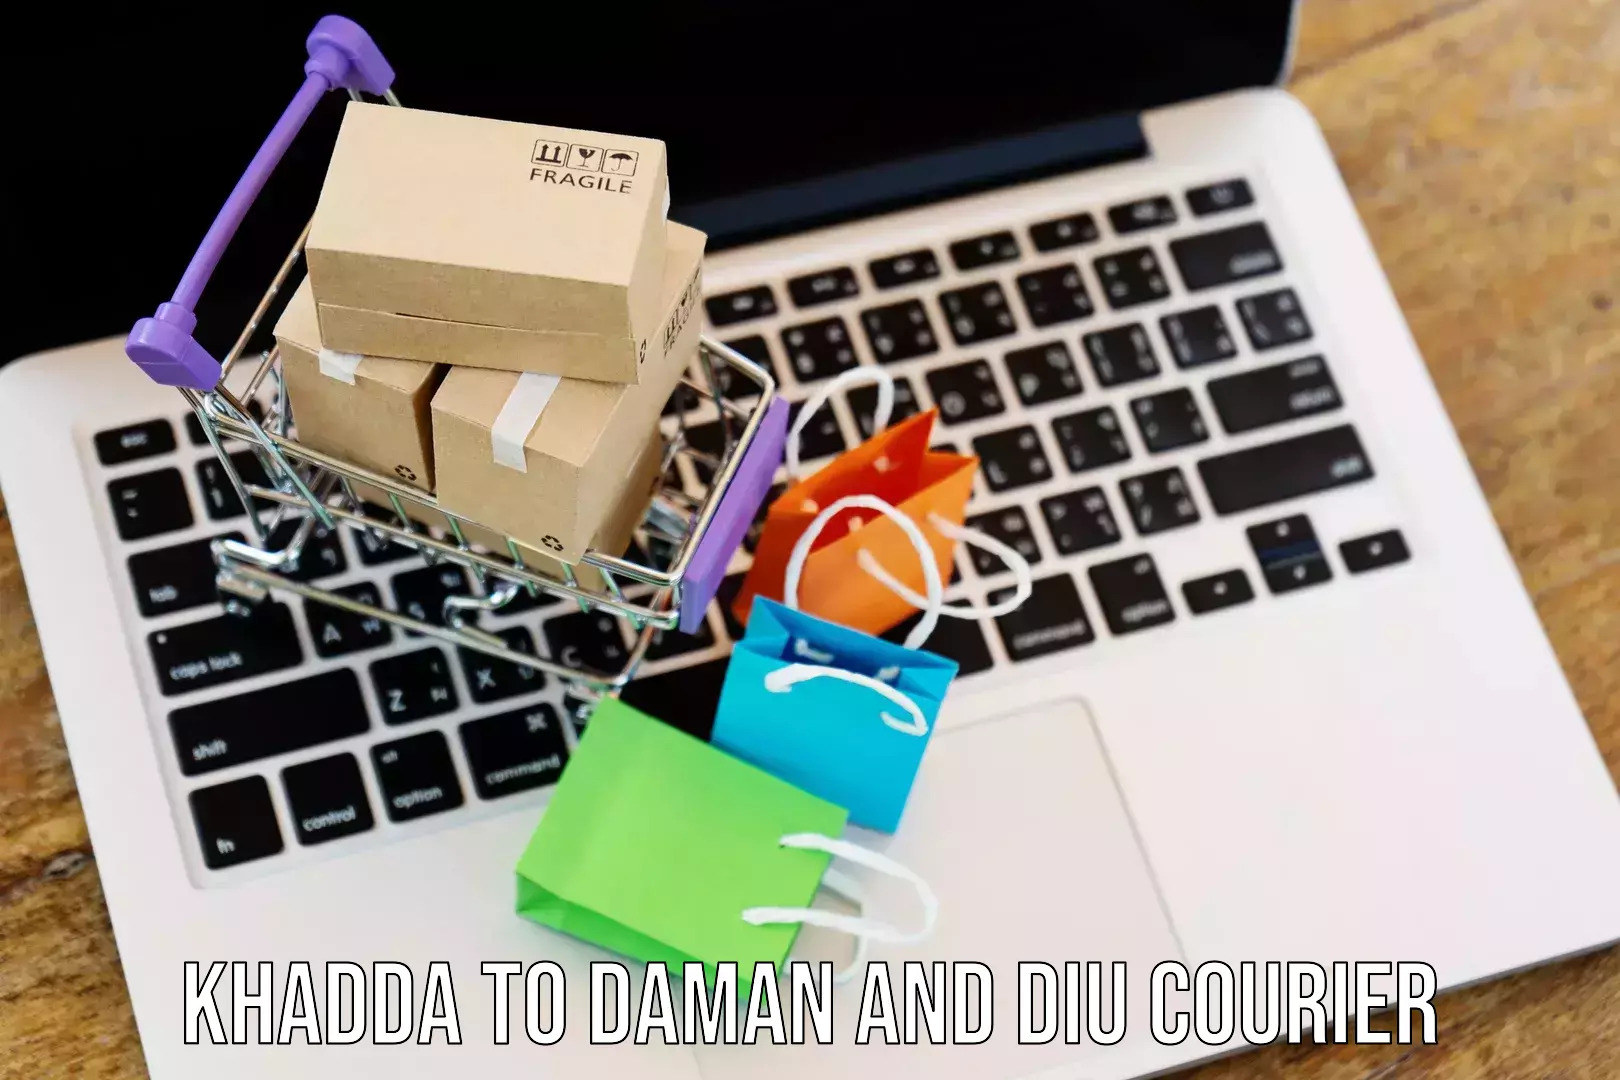 Door-to-door shipment Khadda to Daman